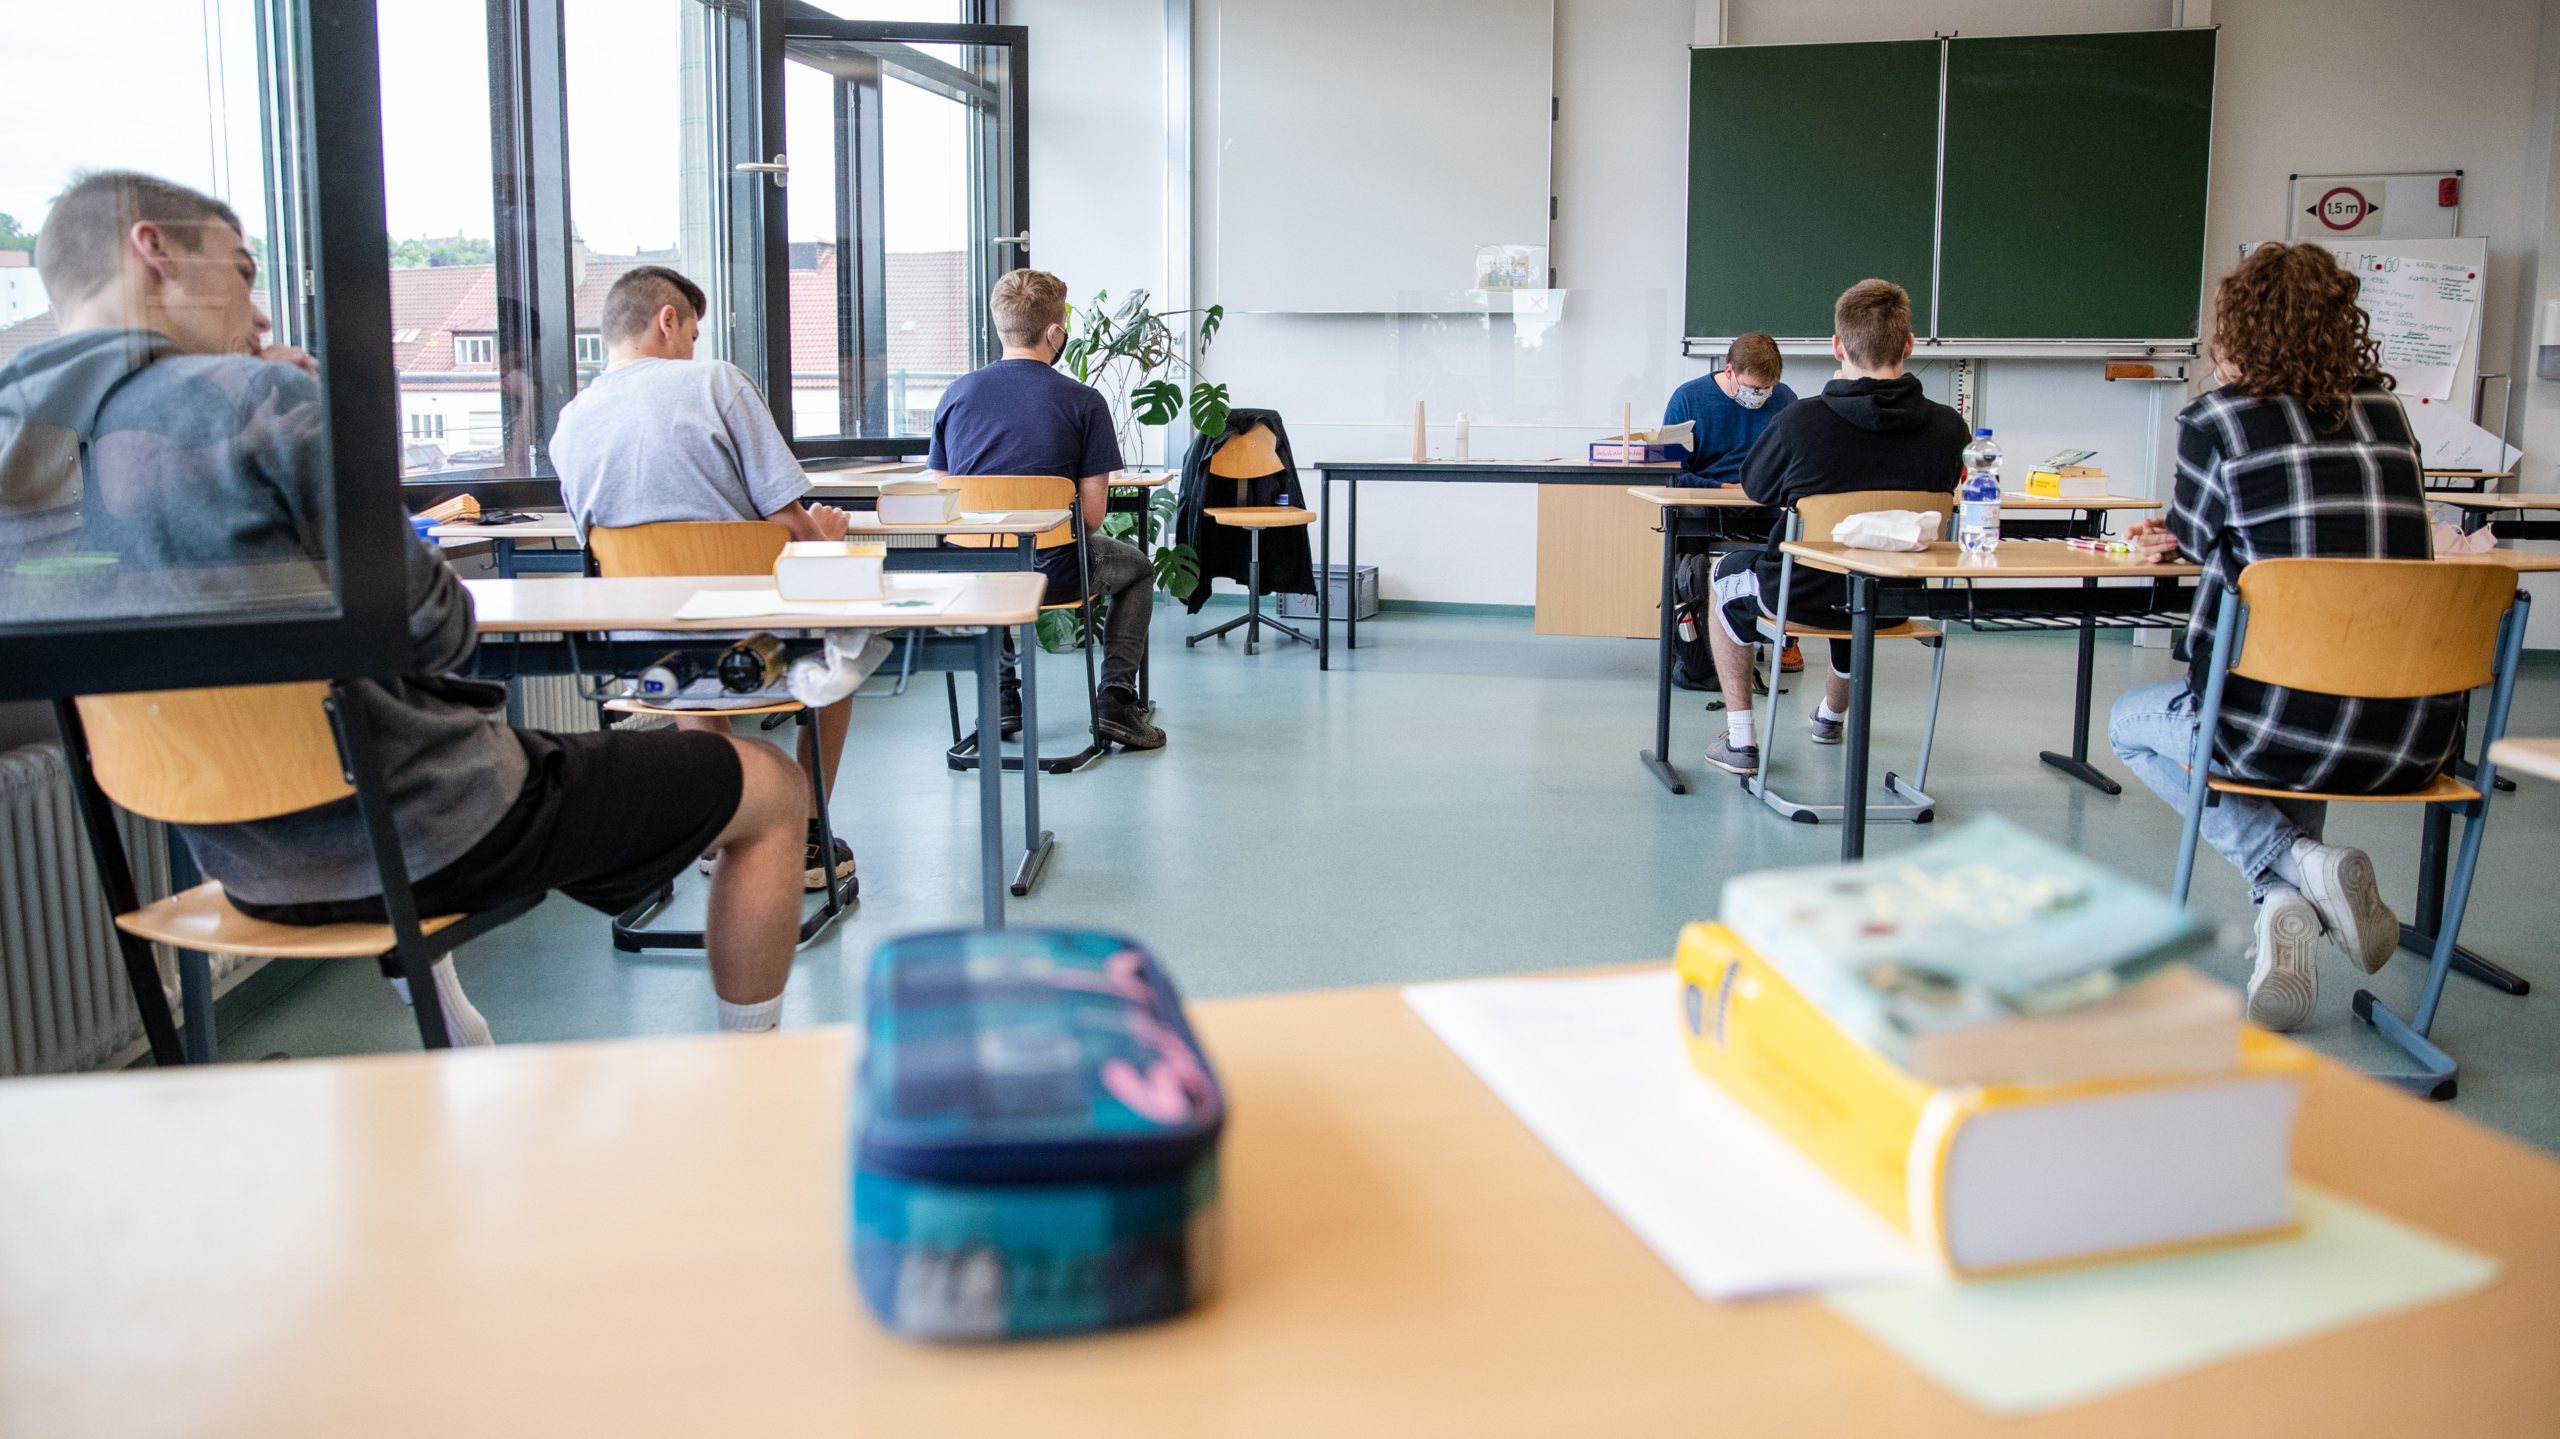 Secondary school examinations in Tübingen